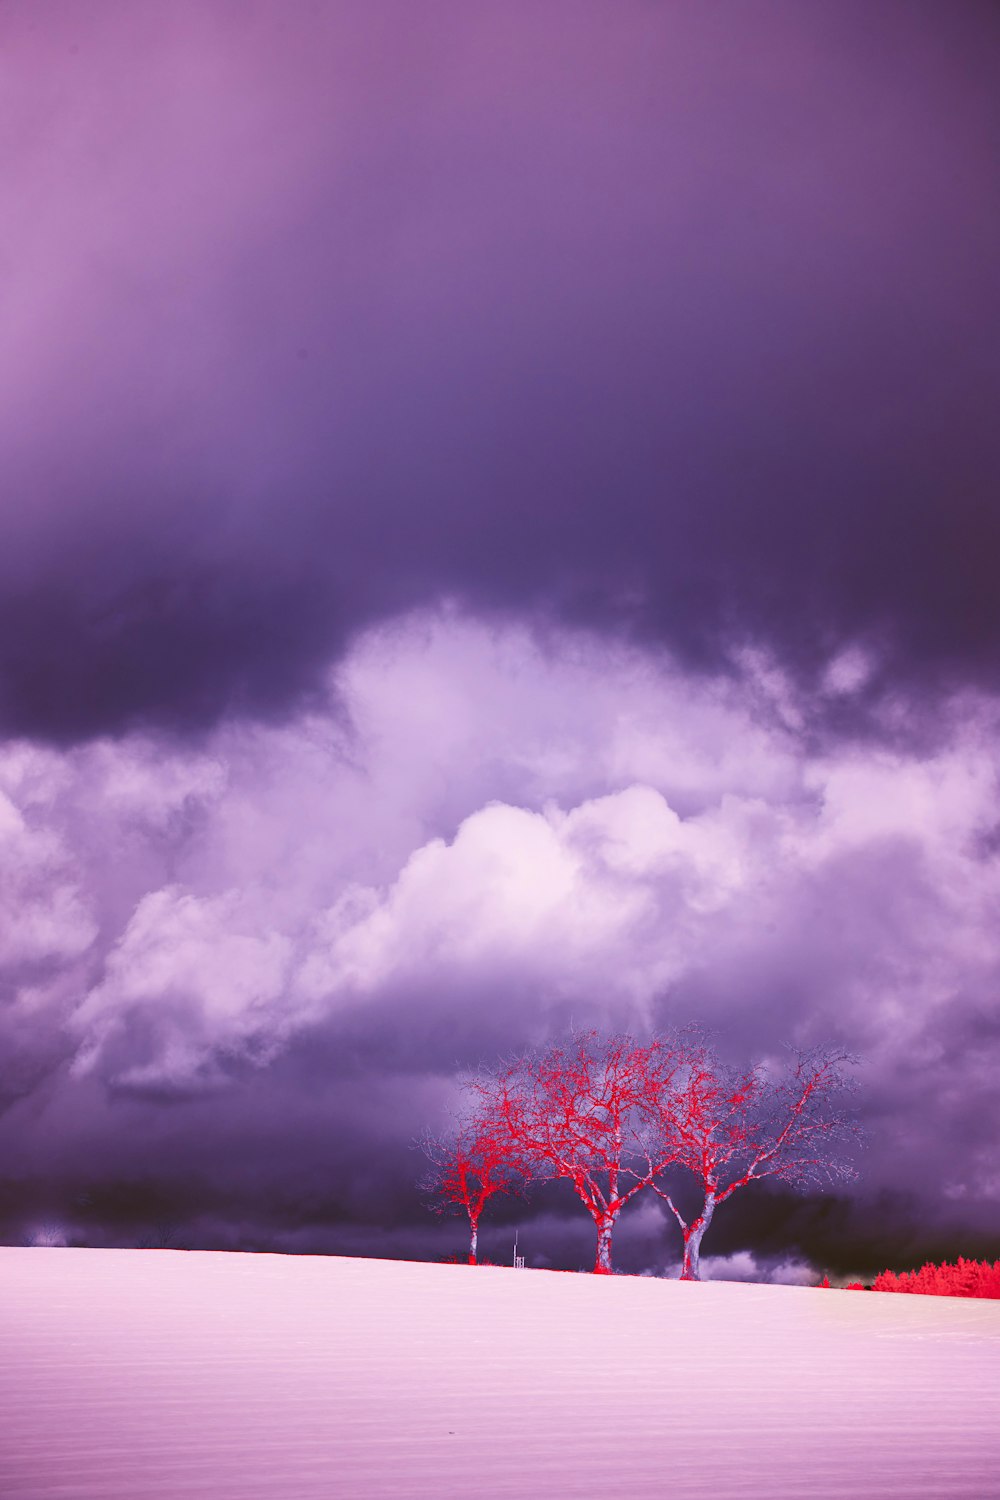 albero a foglia rossa sotto il cielo nuvoloso